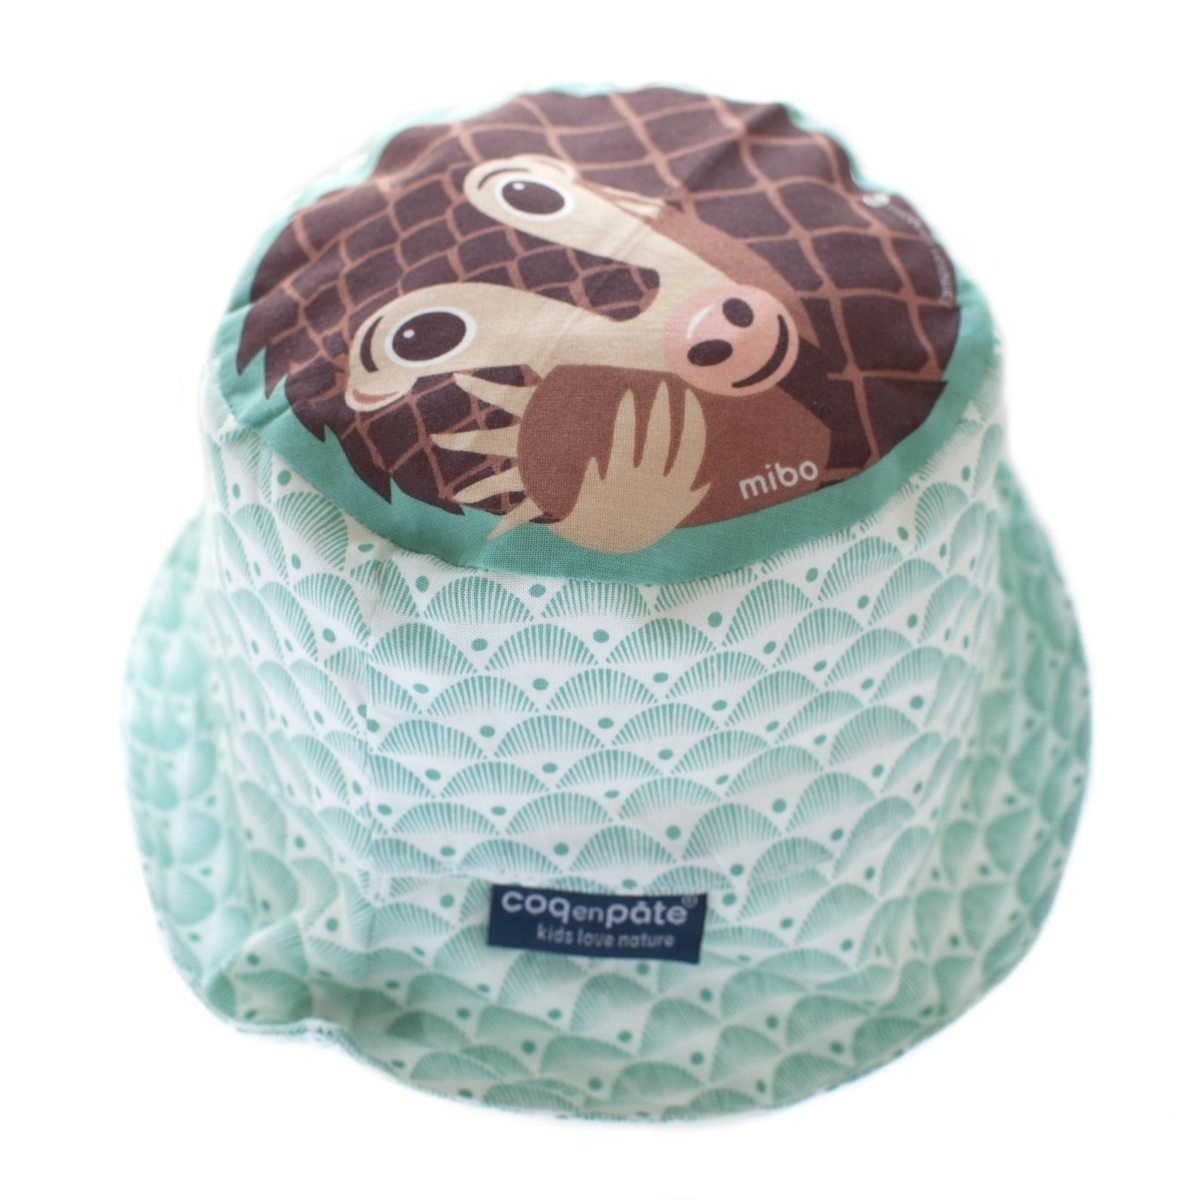 COQ EN PATE Sonnenhut Farbenfroher Kinder-Hut mit Tiermotiven und Mustern Sonnenschutz Schuppentier - Größe: L | Sonnenhüte